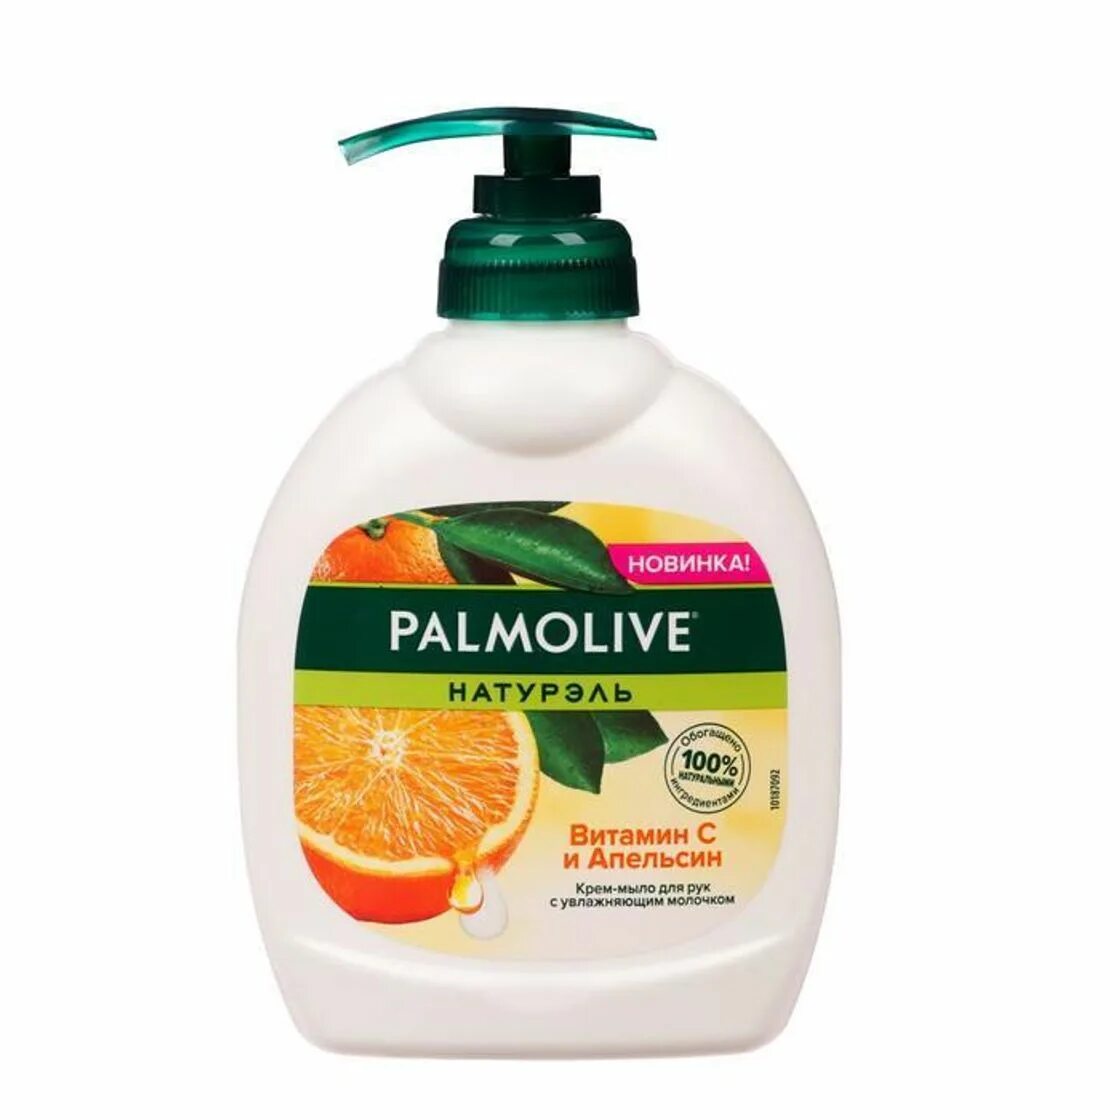 Palmolive крем-мыло жидкое Натурэль витамин с и апельсин, 300 мл. Жидкое мыло Palmolive 300 мл. Palmolive жидкое мыло роскошная мягкость витамин с и апельсин, 300мл.